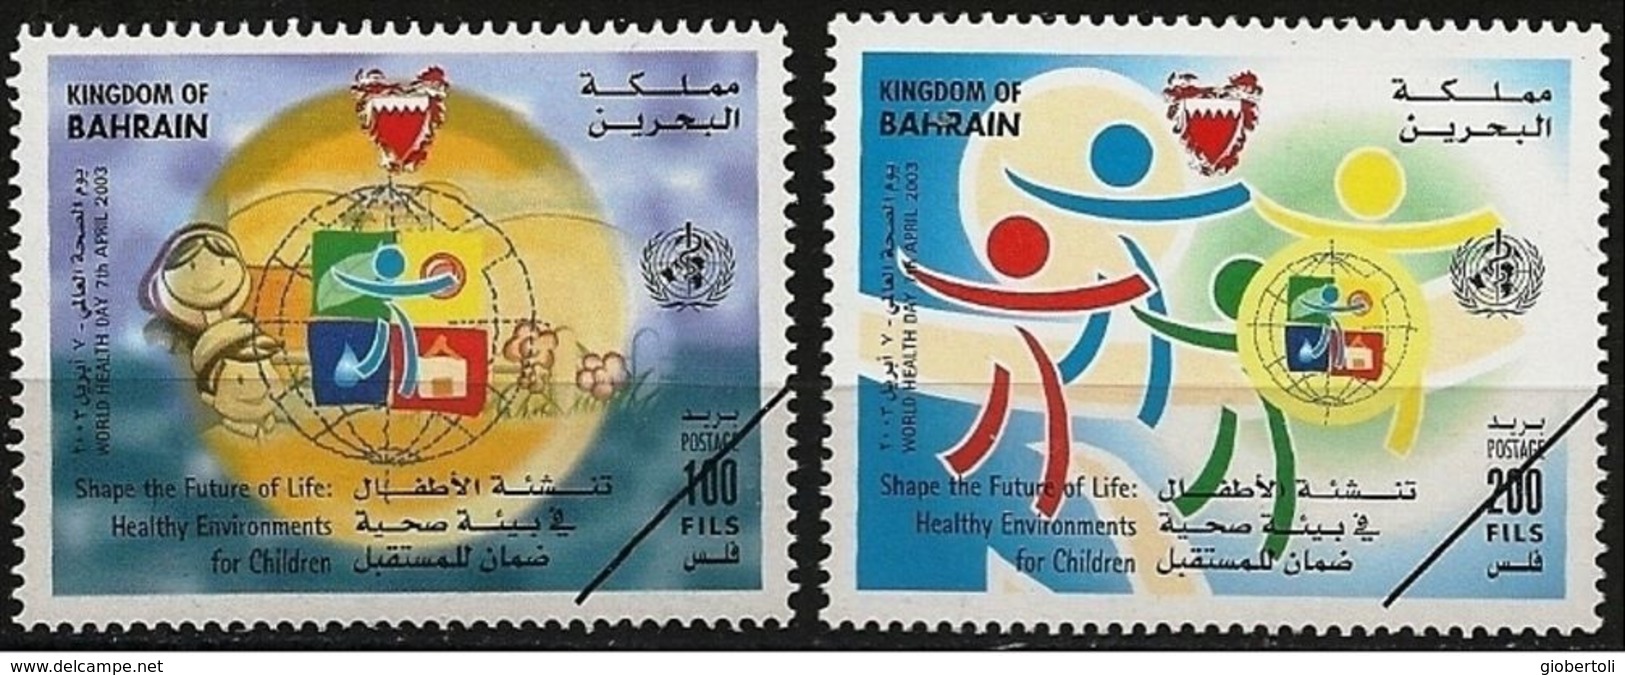 Bahrain: Specimen, Ambiente Sano Per I Bambini, Healthy Environment For Children, Environnement Sain Pour Les Enfants - Polucion